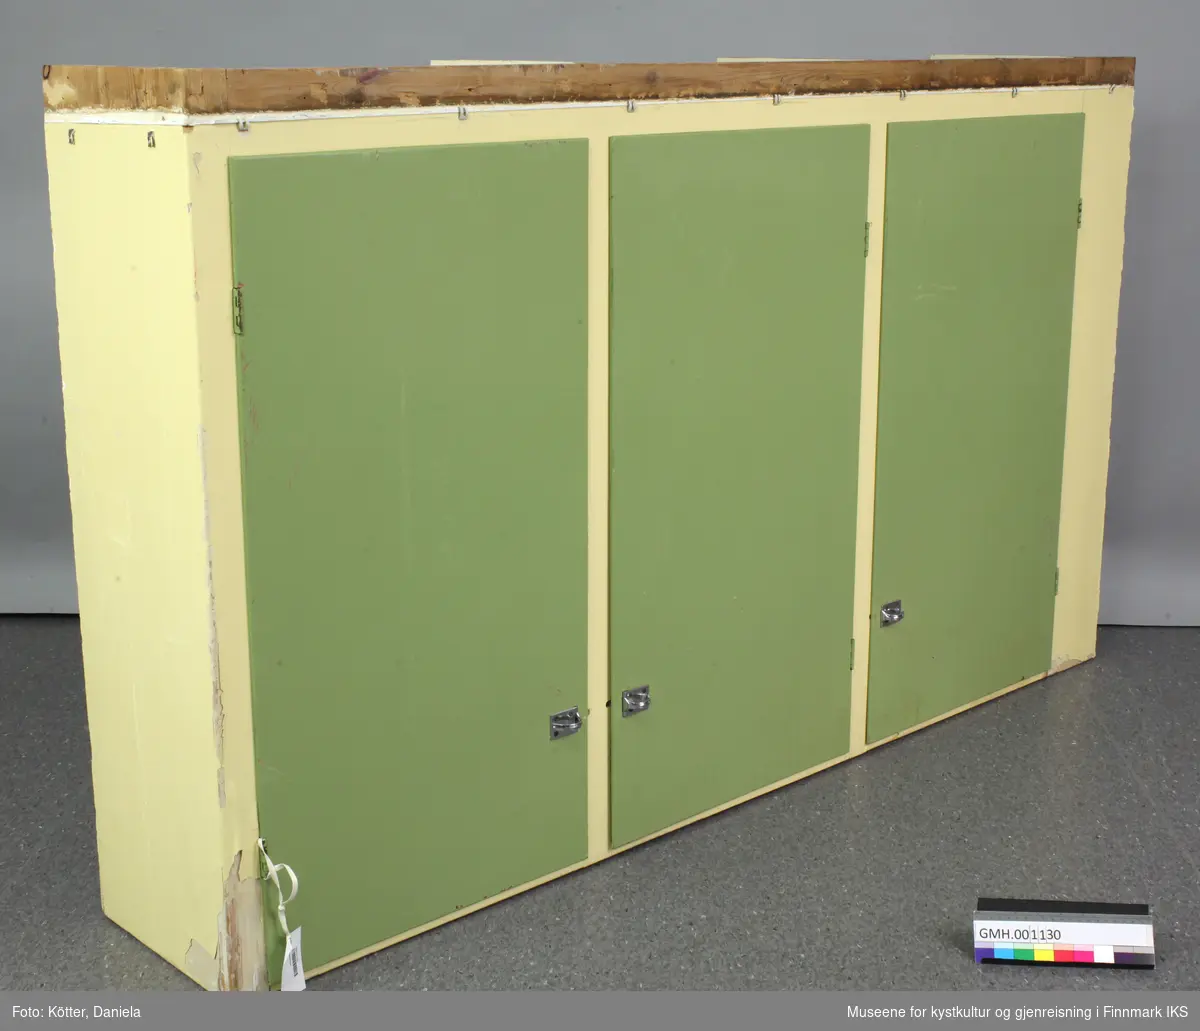 Kjøkkenskapet er et overskap til vegghengt montasje. Dens kropp er malt lysegul. Dørene er malt grønn. De loddredde elementene, men også tak og bunn, er bygget av sammenlimte trebord. Hyllene er føyd inn i noter. Det ble også brukt såkalte bølgespiker for å forbinde skapdeler med hverandre.
Bak hver dør er det tre hyller. To av de nederste hyller er dekket med kontaktplast, mønstret plastfolie som er pålimt. Forsiden av hyllekantene er pyntet med remser av rødt mønstret plast.